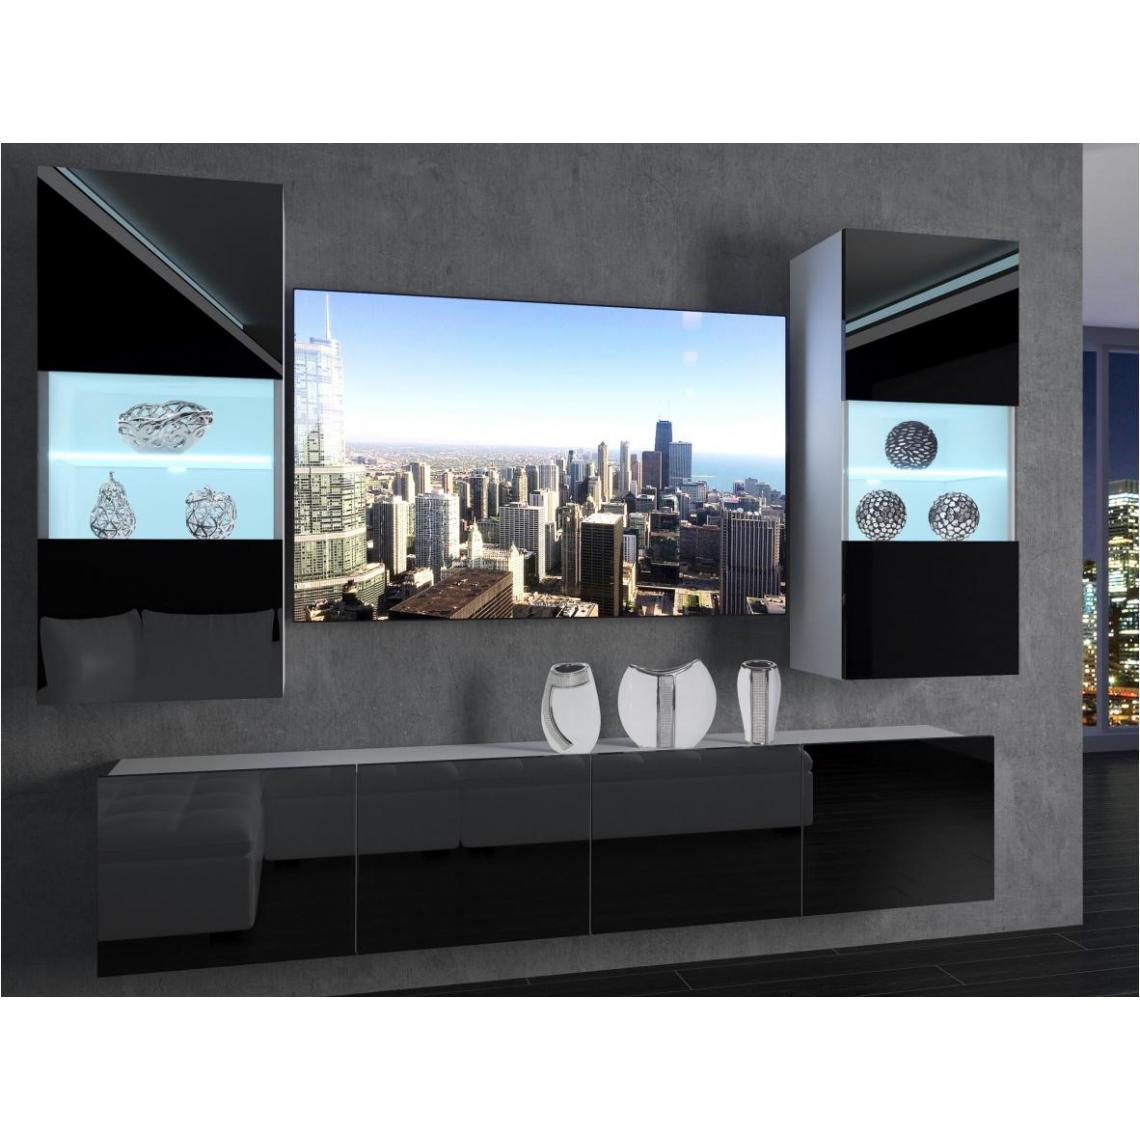 Hucoco - CYAN - Ensemble meubles TV + LED - Unité murale moderne - Largeur 200 cm - Mur TV à suspendre - 2 meuble vitrines - Noir - Meubles TV, Hi-Fi